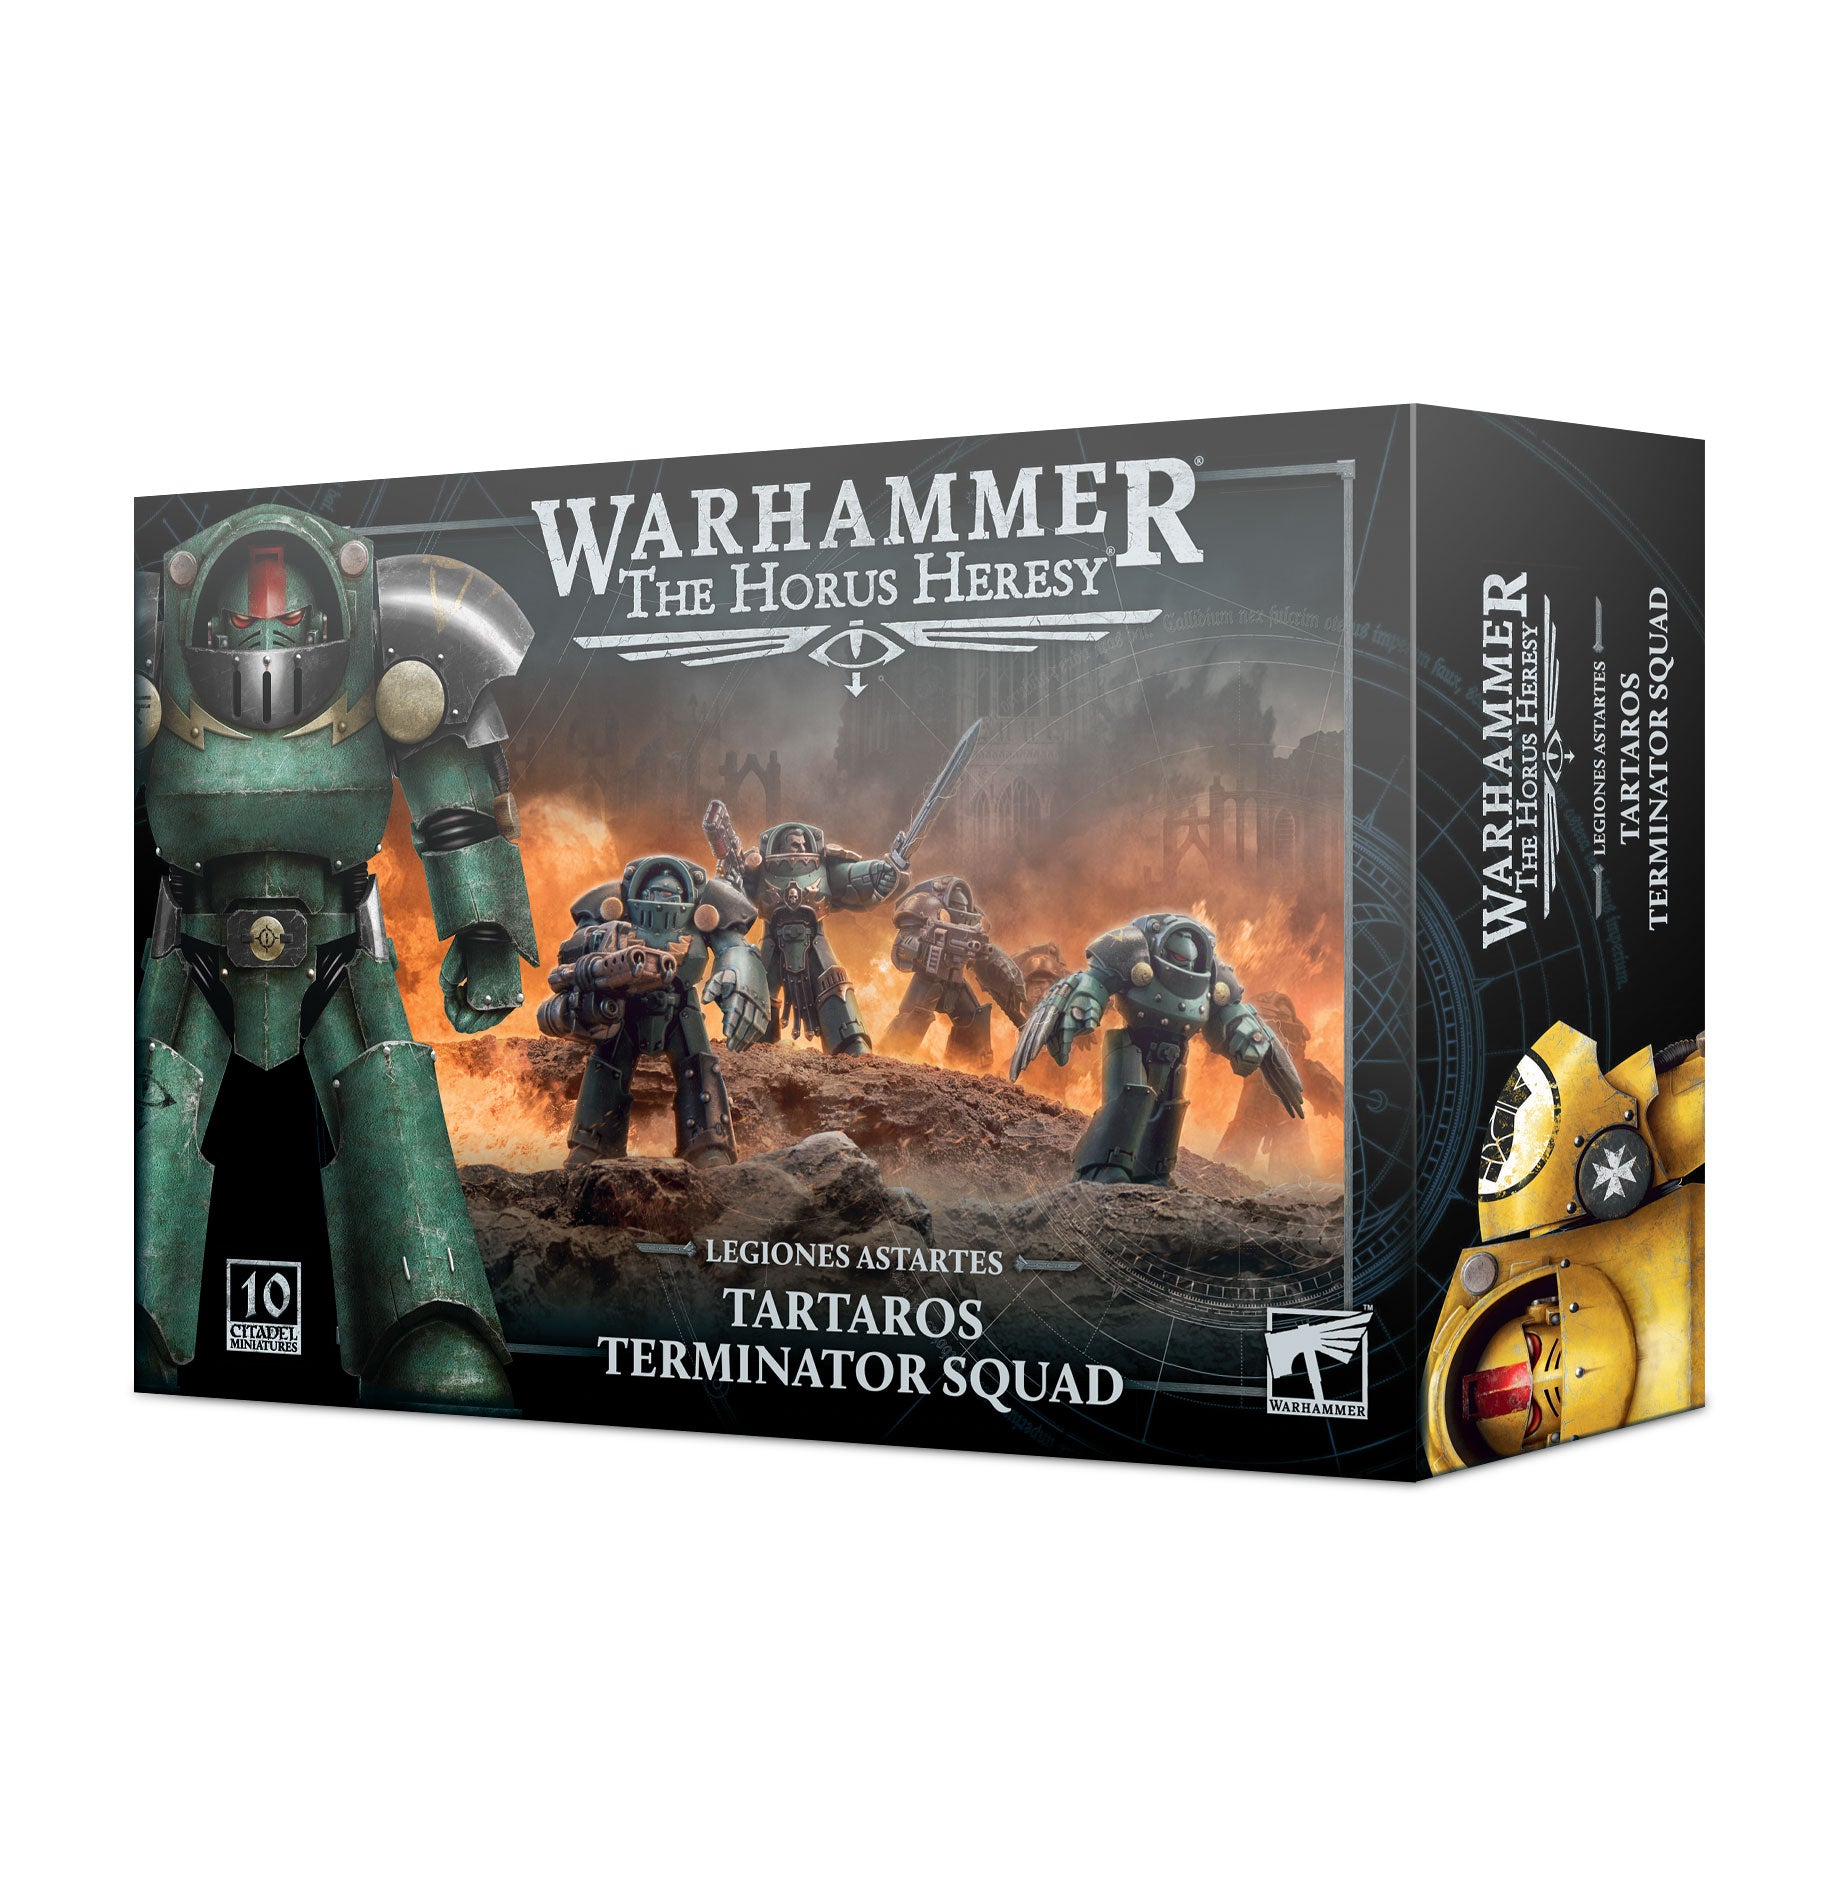 Warhammer Horus Heresy: Legiones Astartes Tartaros Terminator Squad